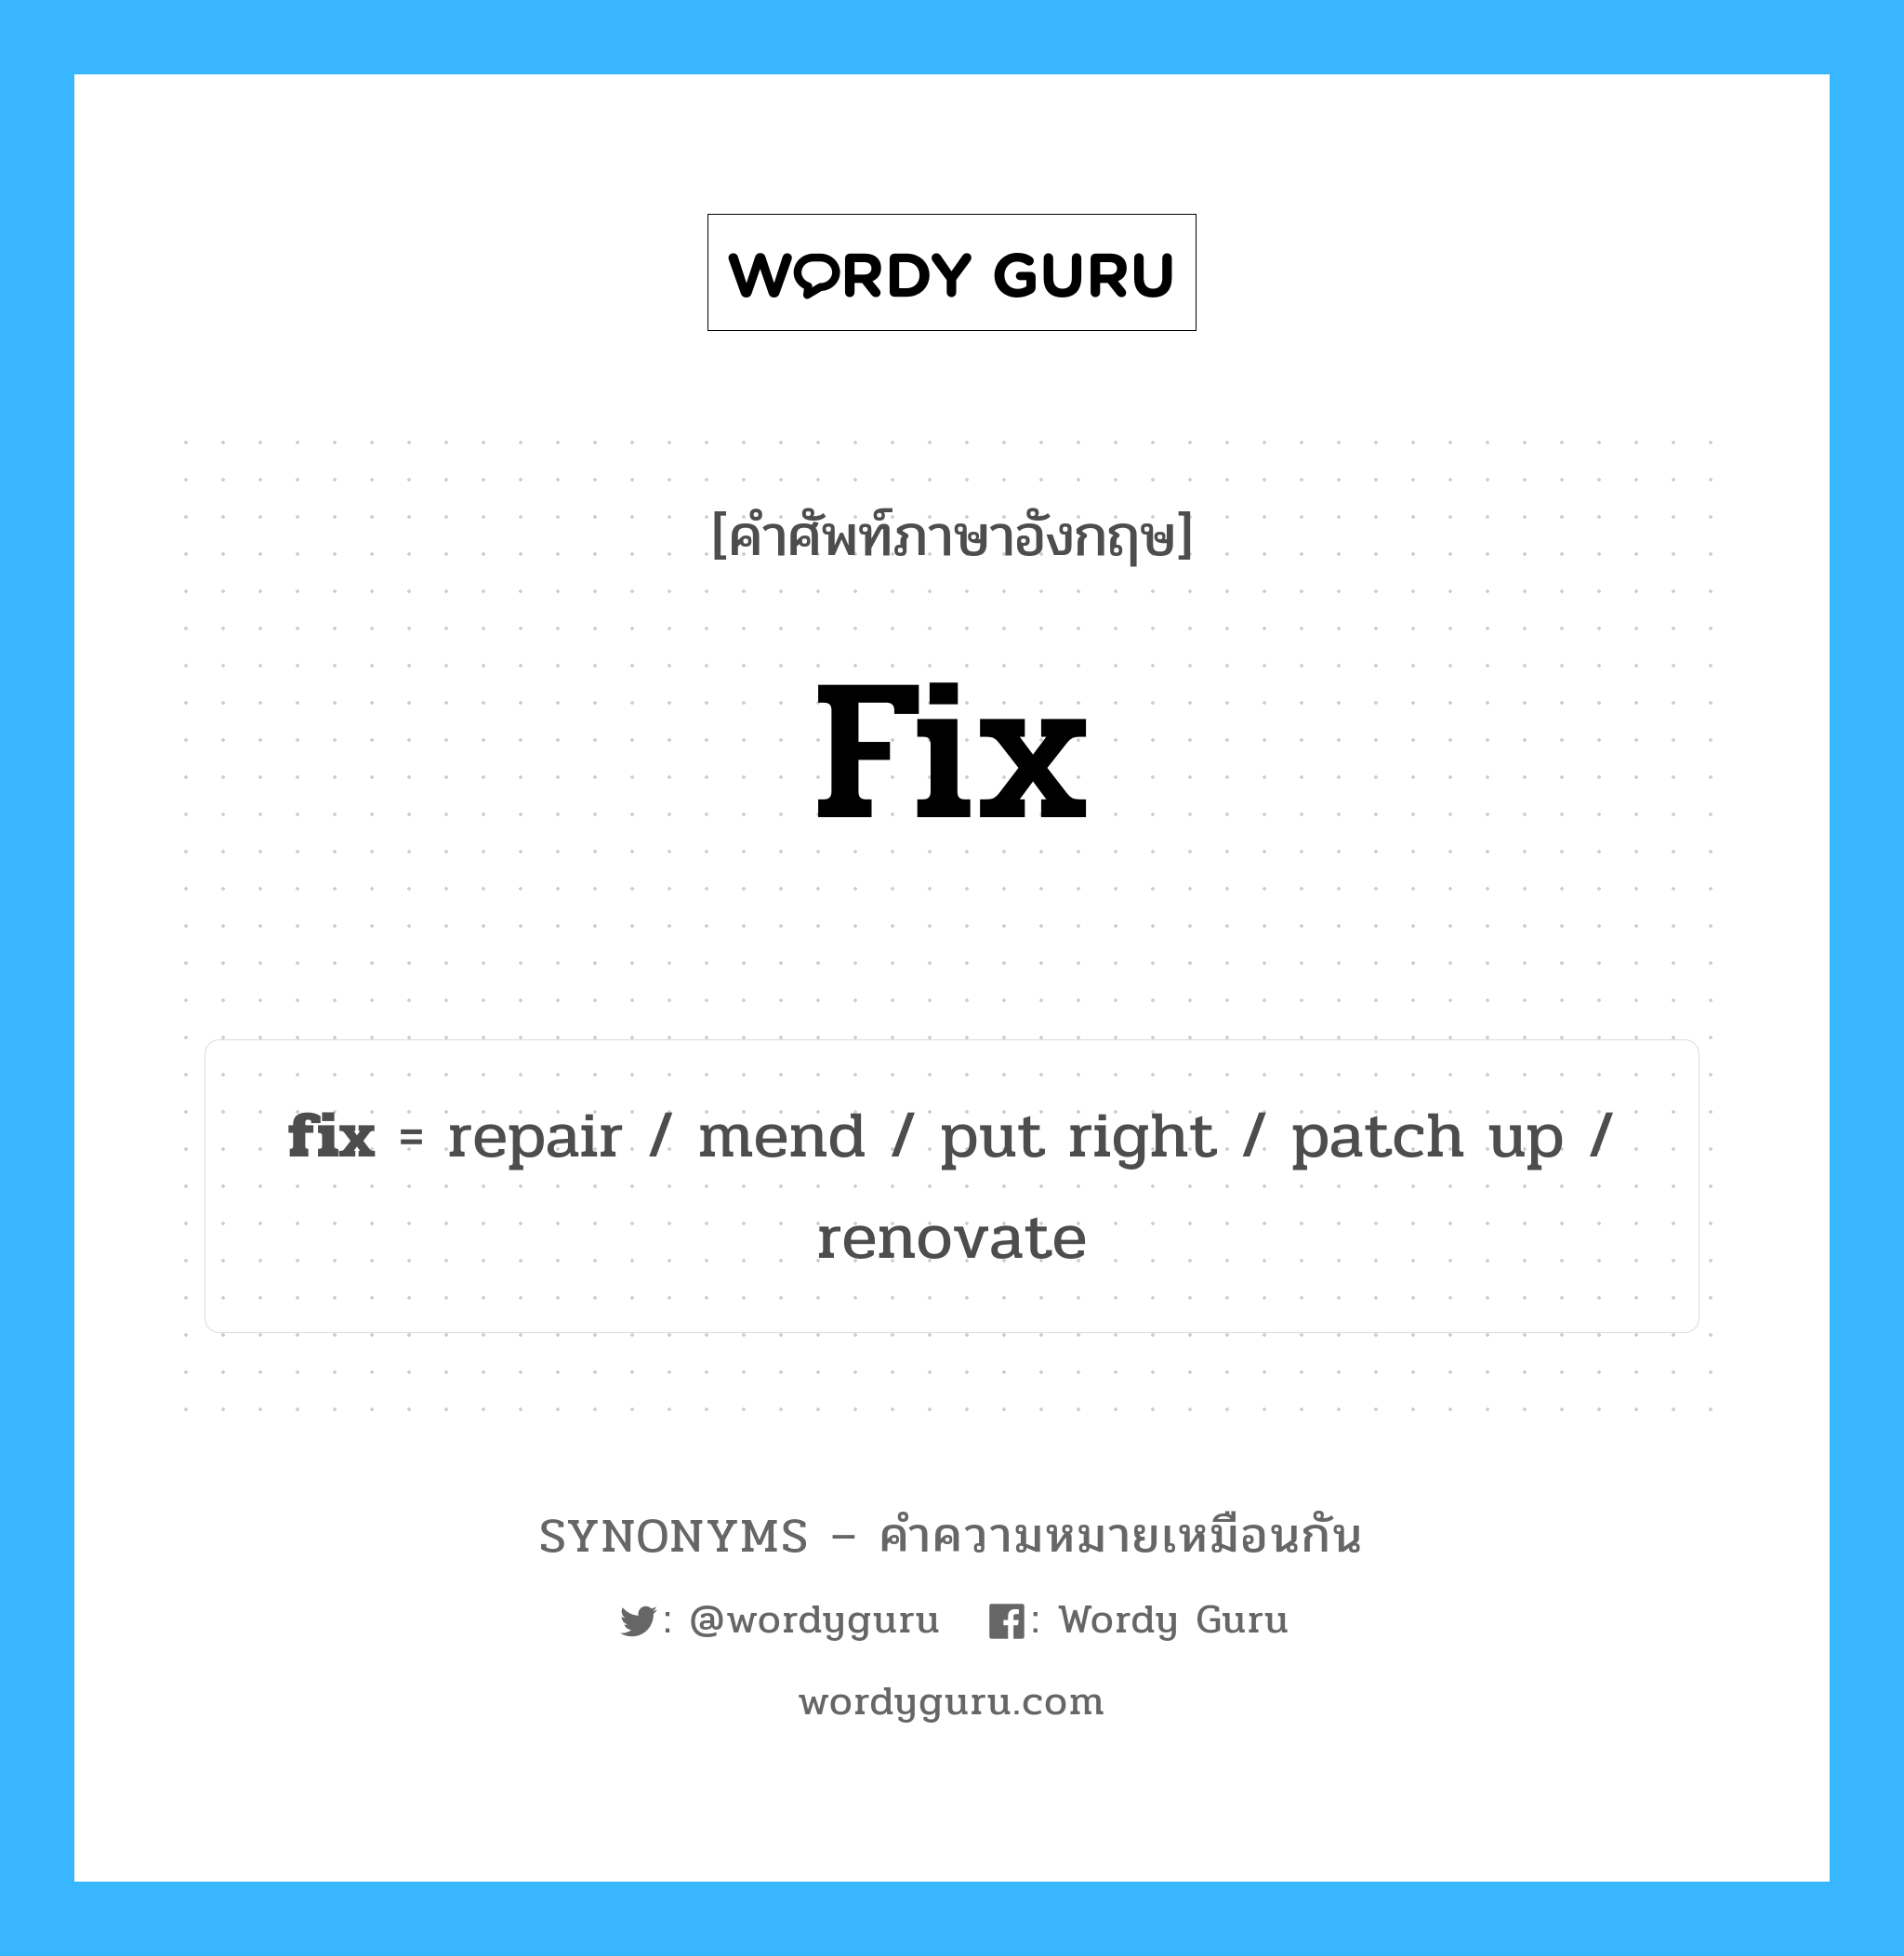 fix เป็นหนึ่งใน repair และมีคำอื่น ๆ อีกดังนี้, คำศัพท์ภาษาอังกฤษ fix ความหมายคล้ายกันกับ repair แปลว่า ซ่อมแซม หมวด repair